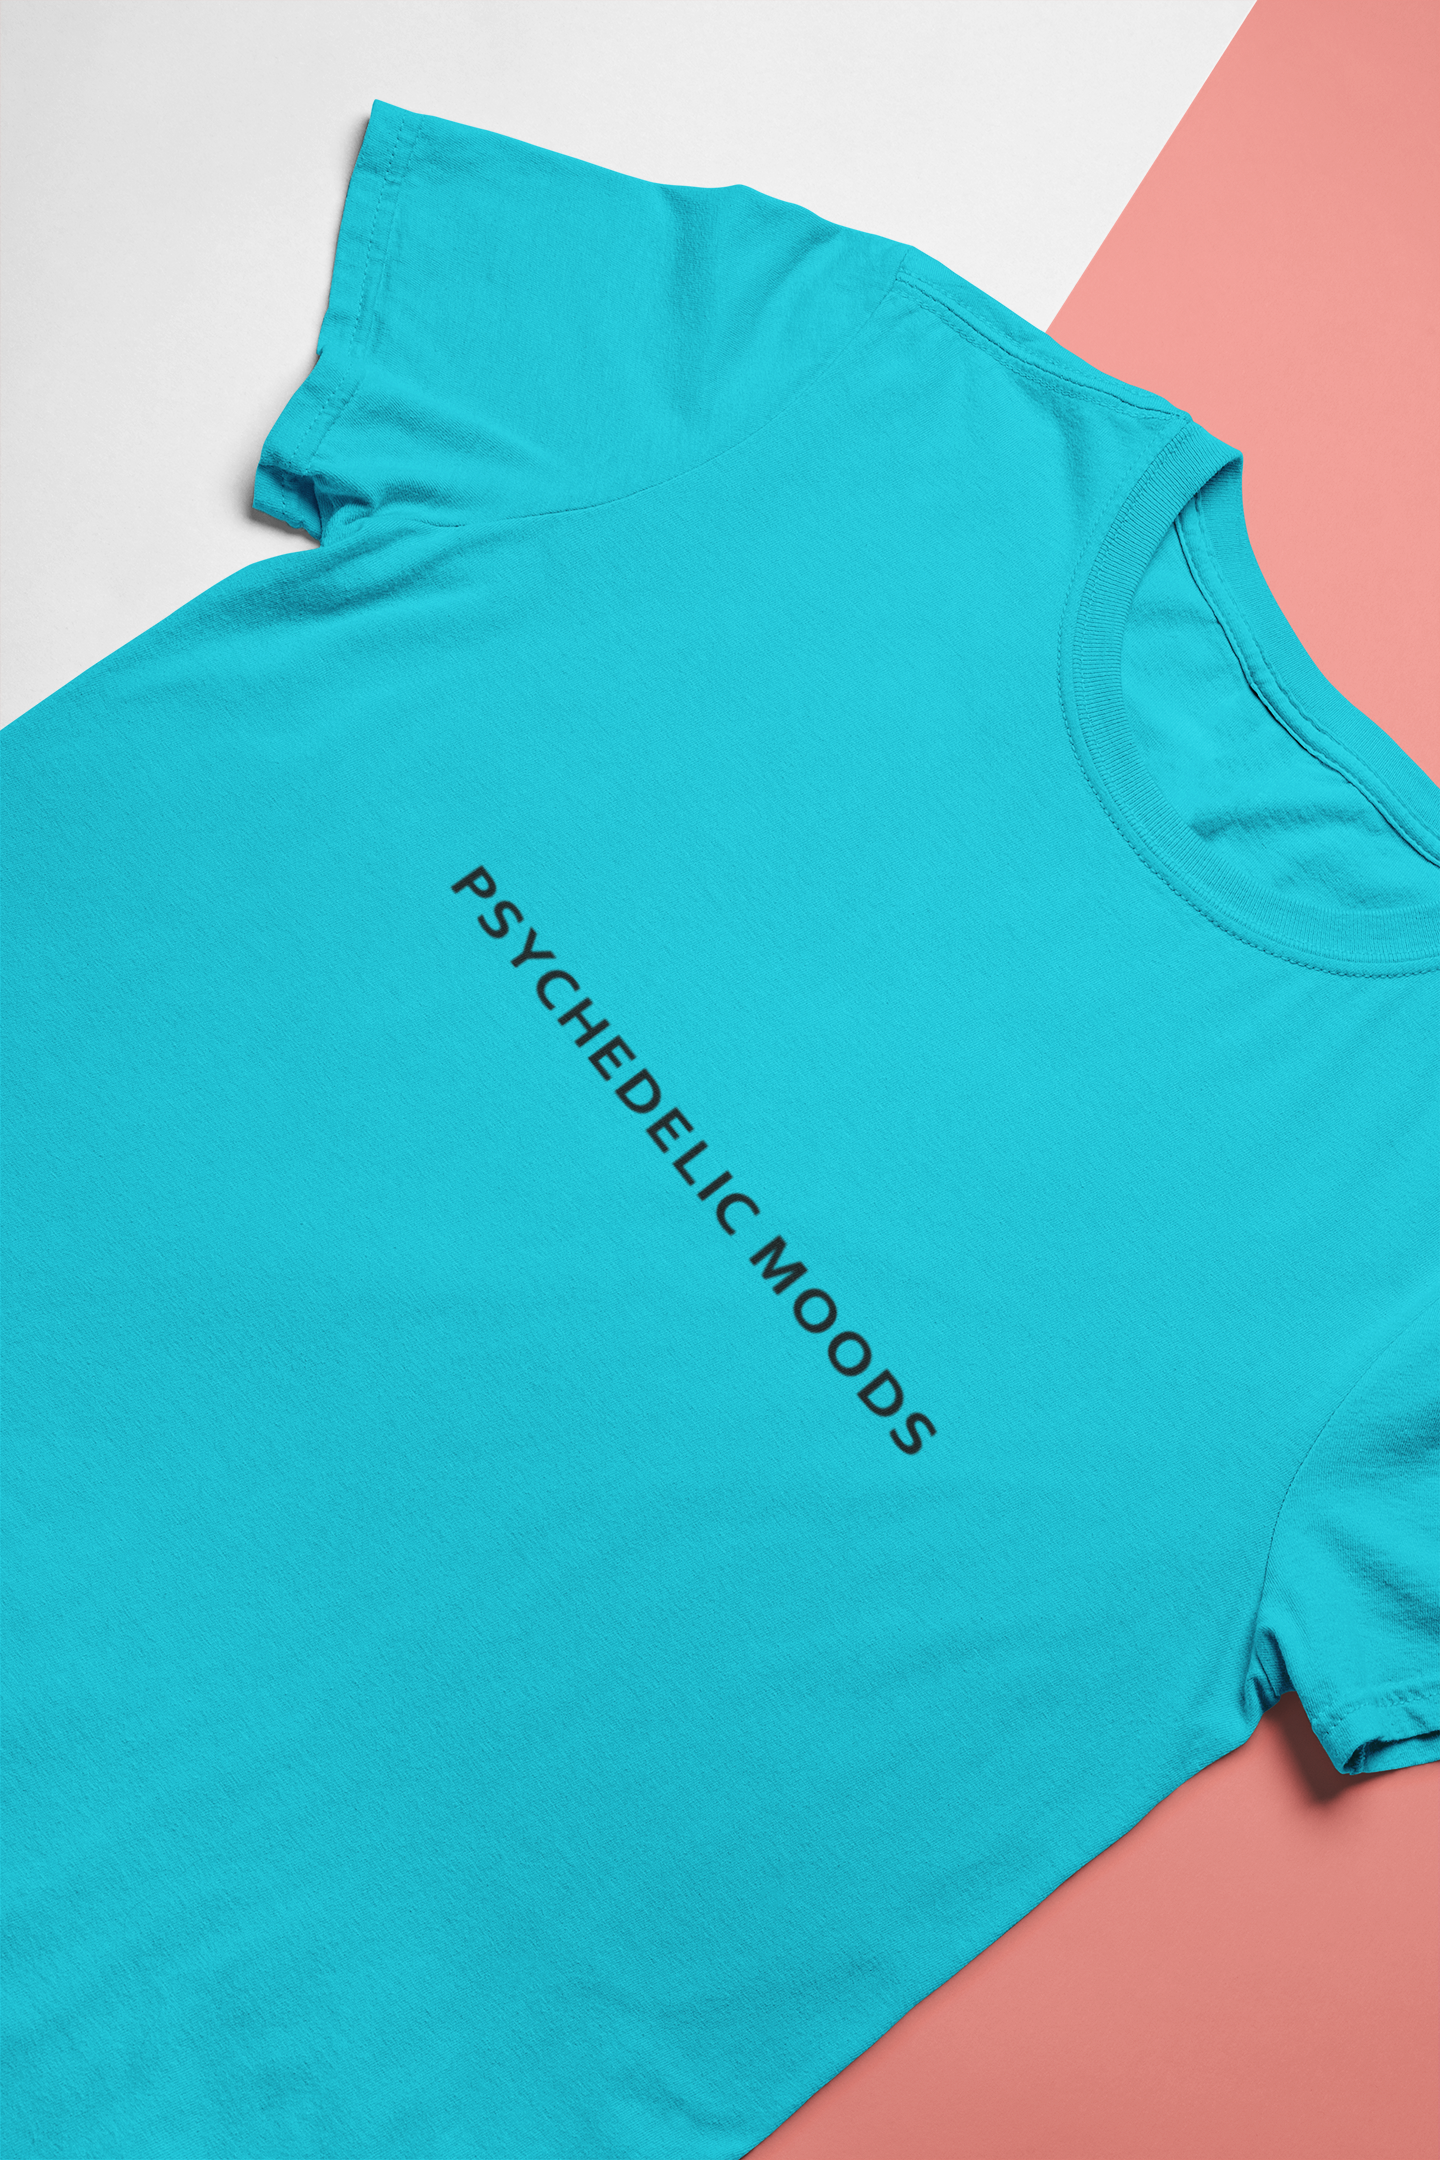 Psychedelic Moods Minimal Mens Half Sleeves T-shirt- FunkyTeesClub